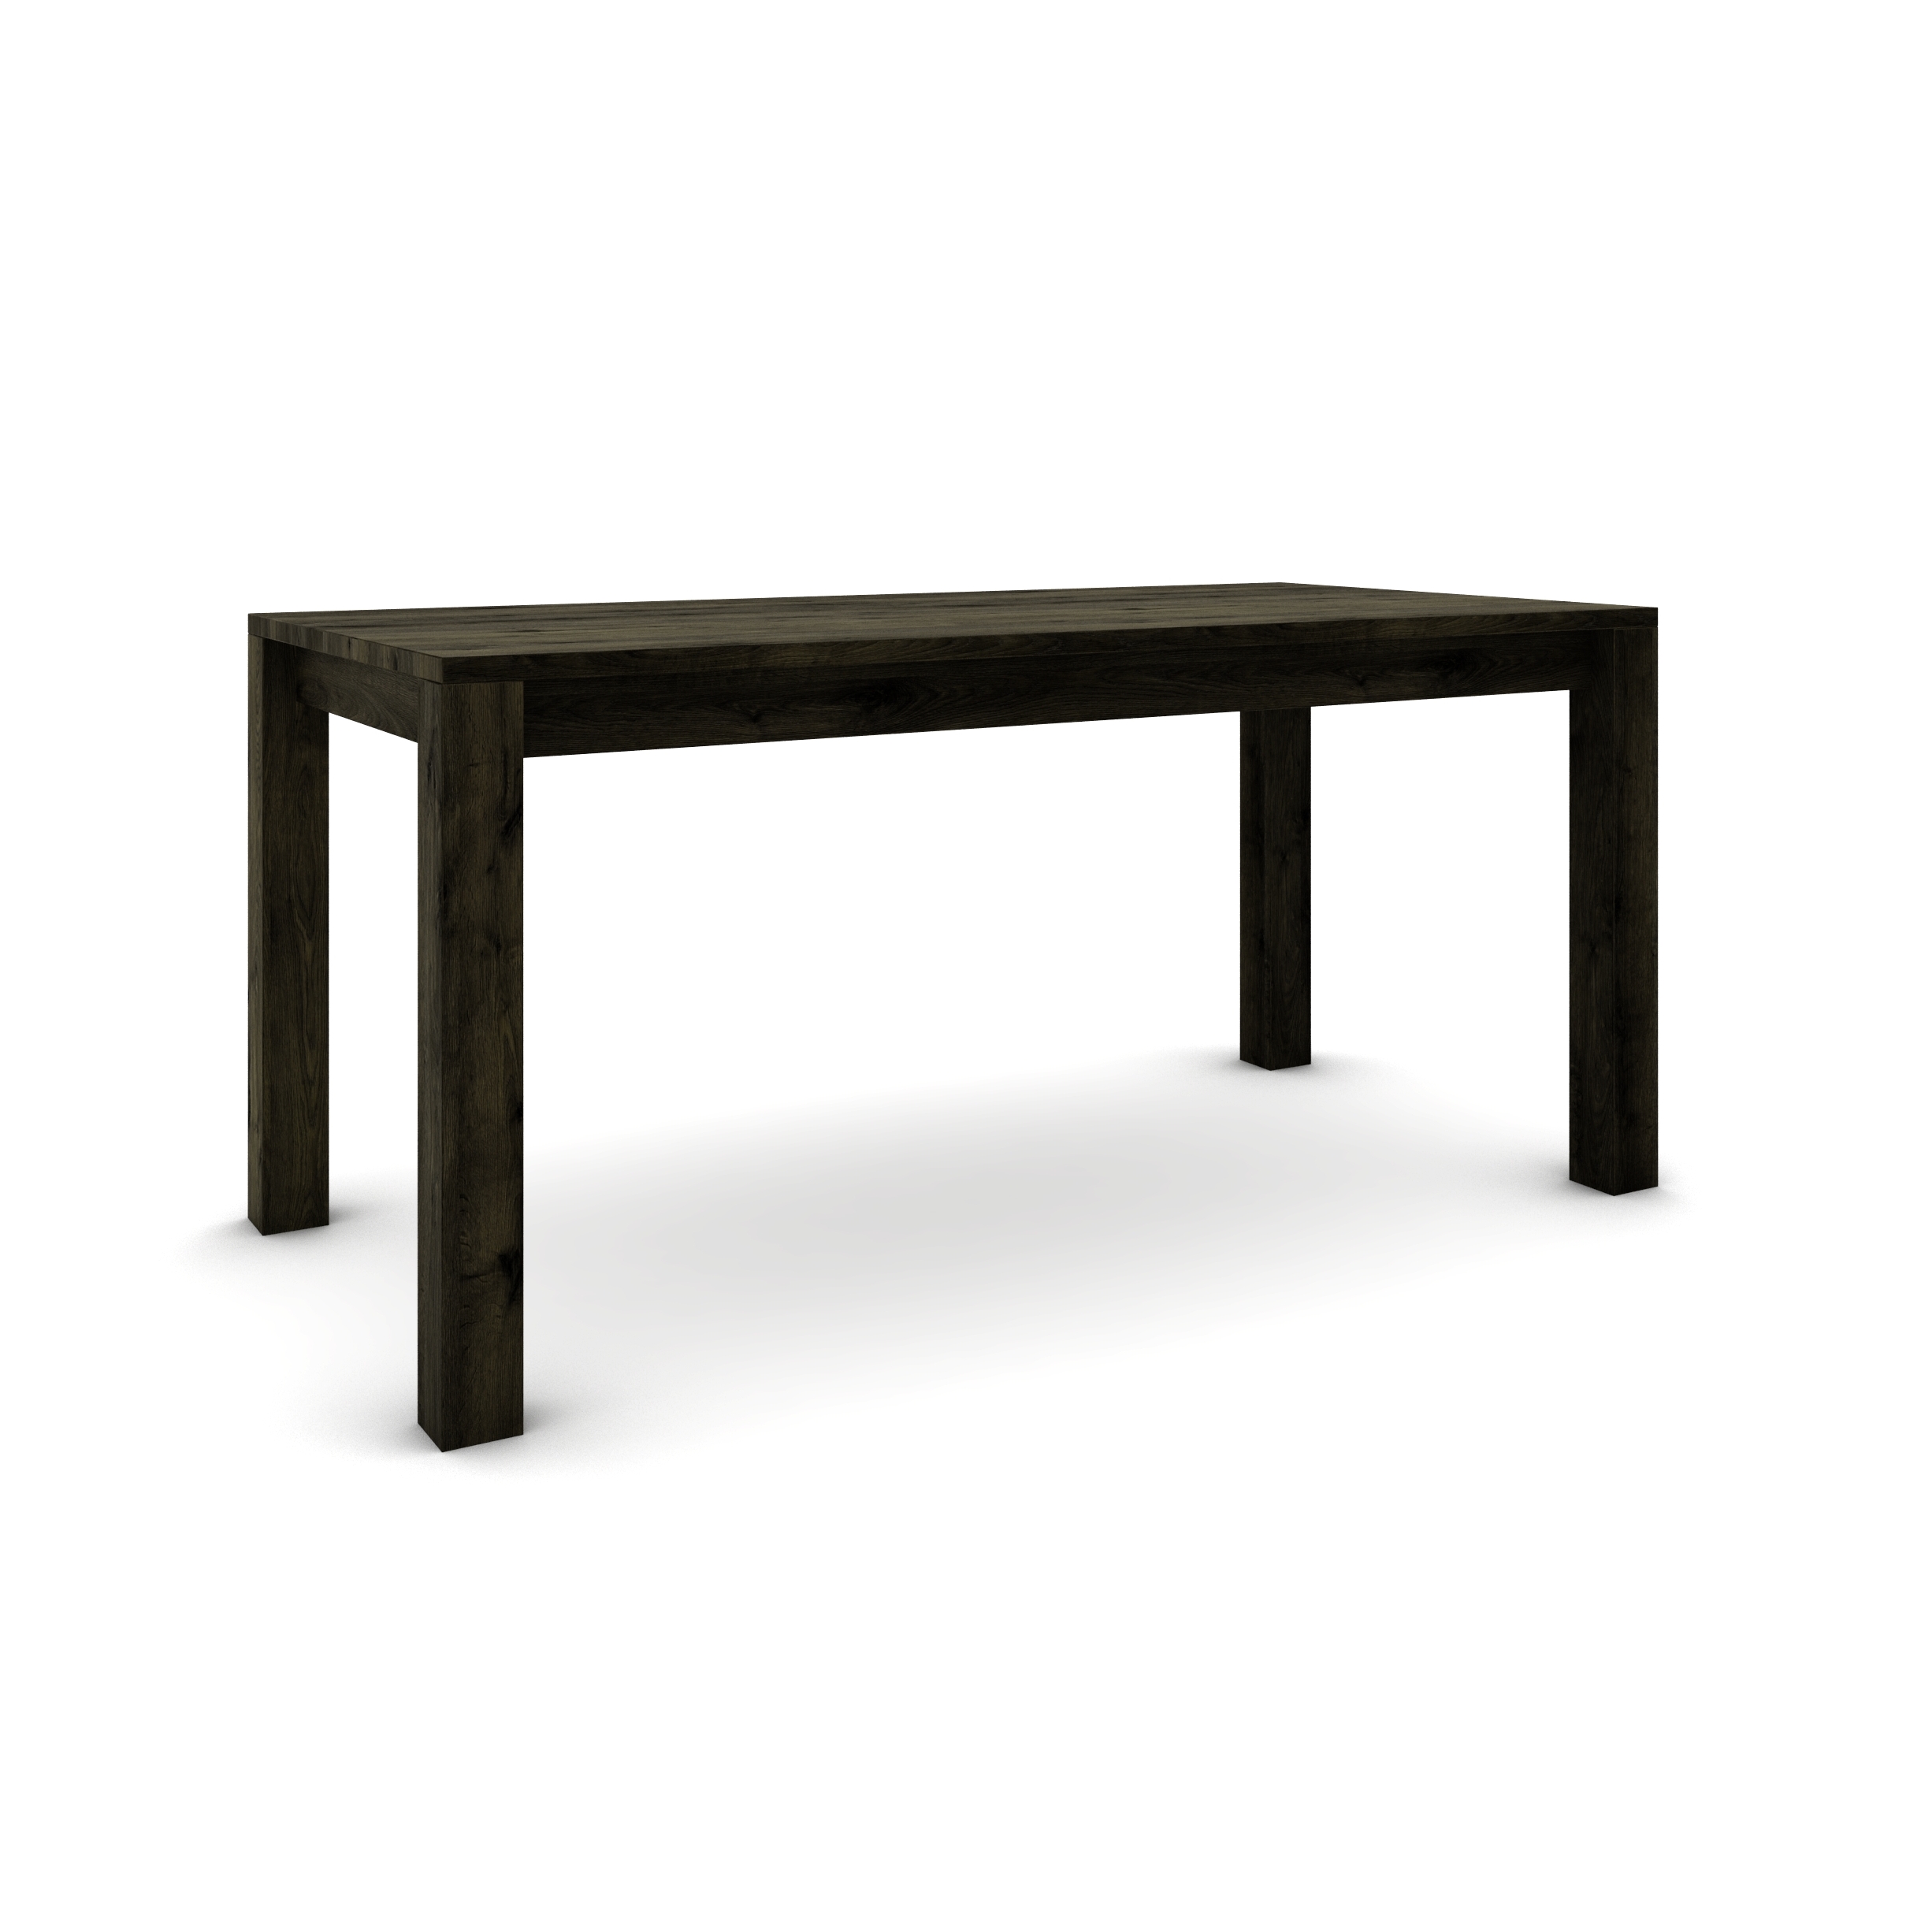 Dubový stůl 160 x 80 cm , černý se stříbrným efektem